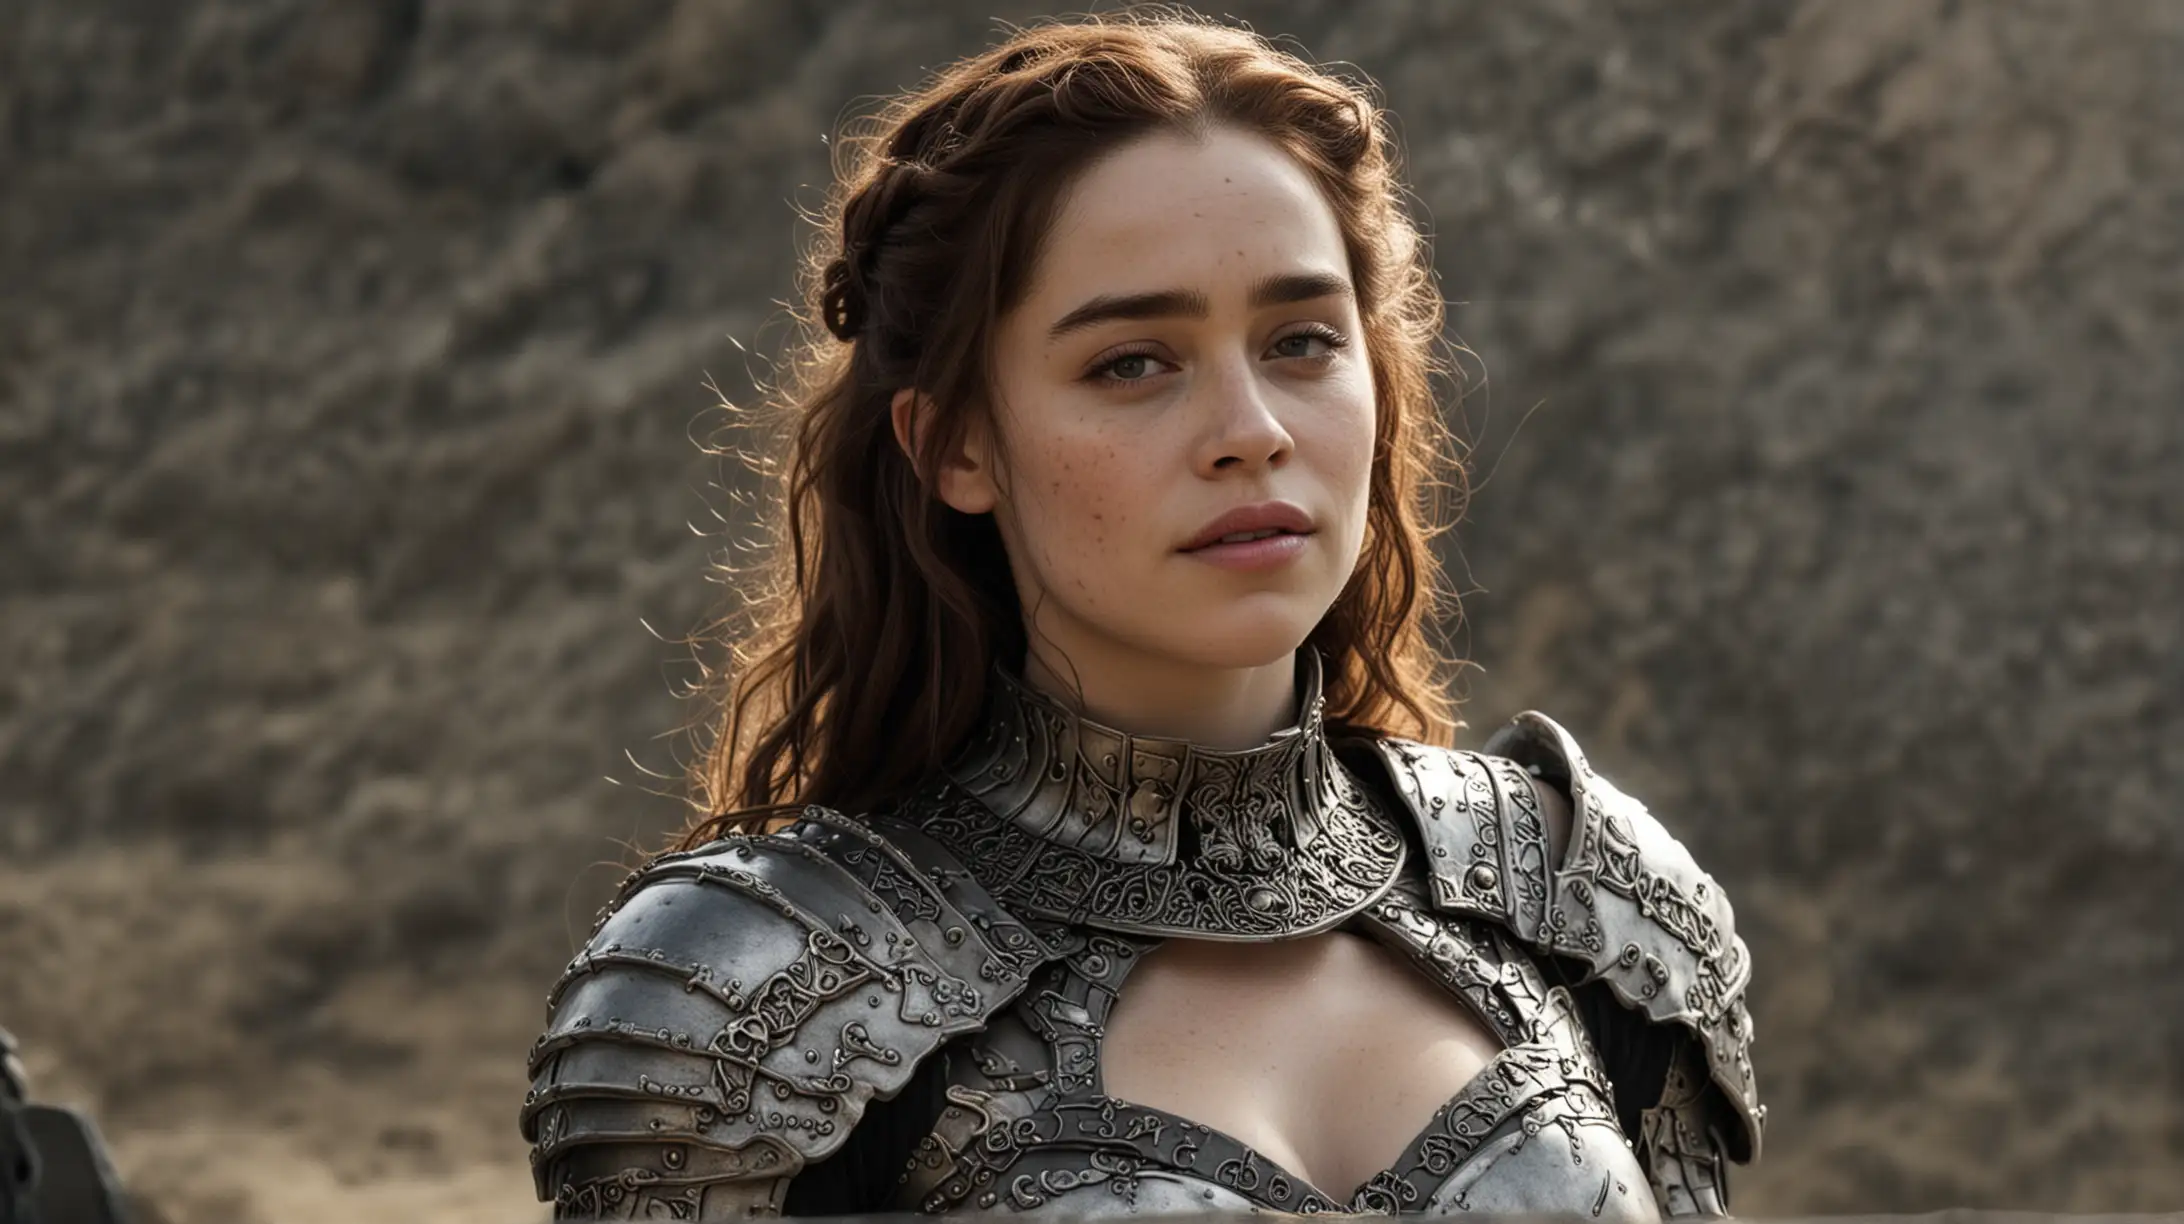 Emilia Clarke in Freckled Armor Battles the Skeleton King under Natural Lighting